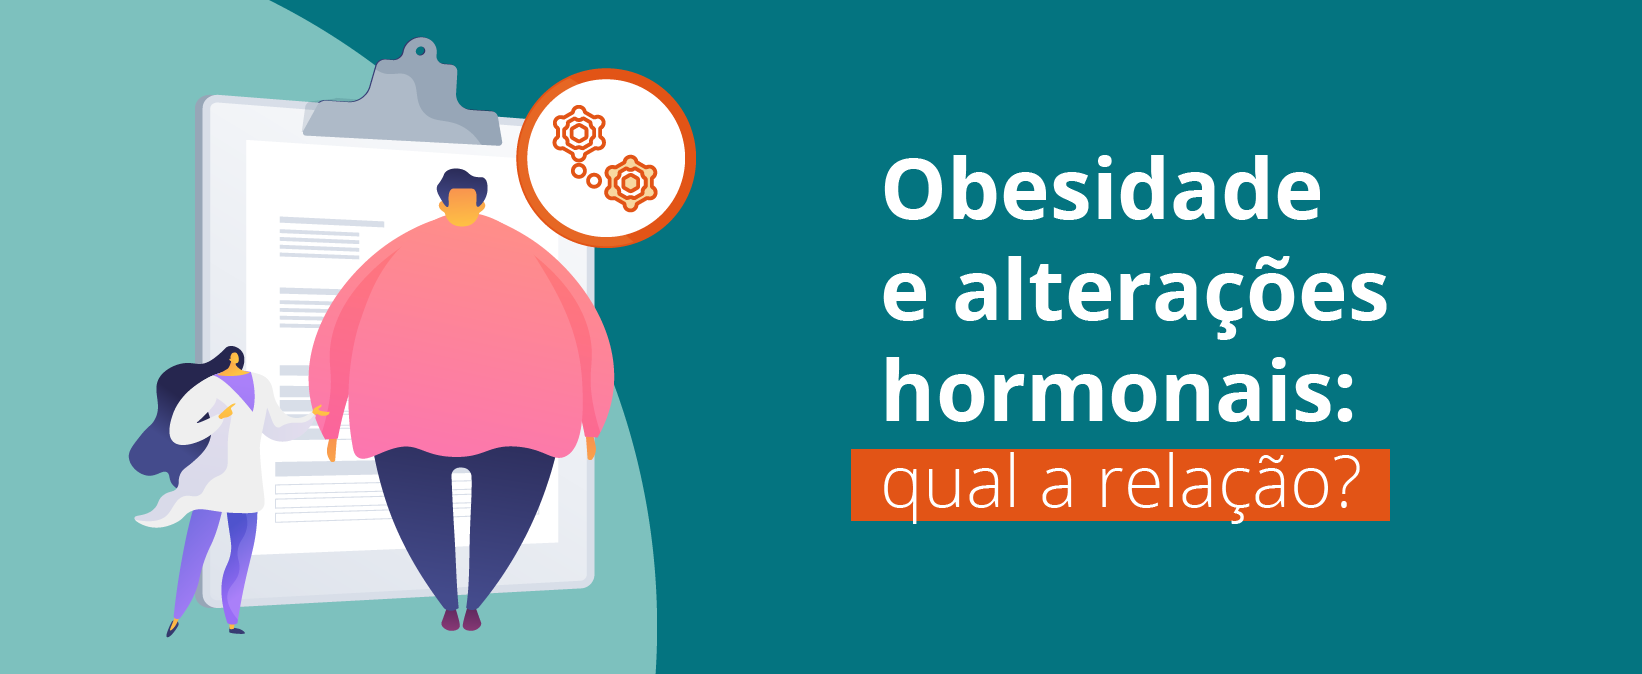 Obesidade e alterações hormonais